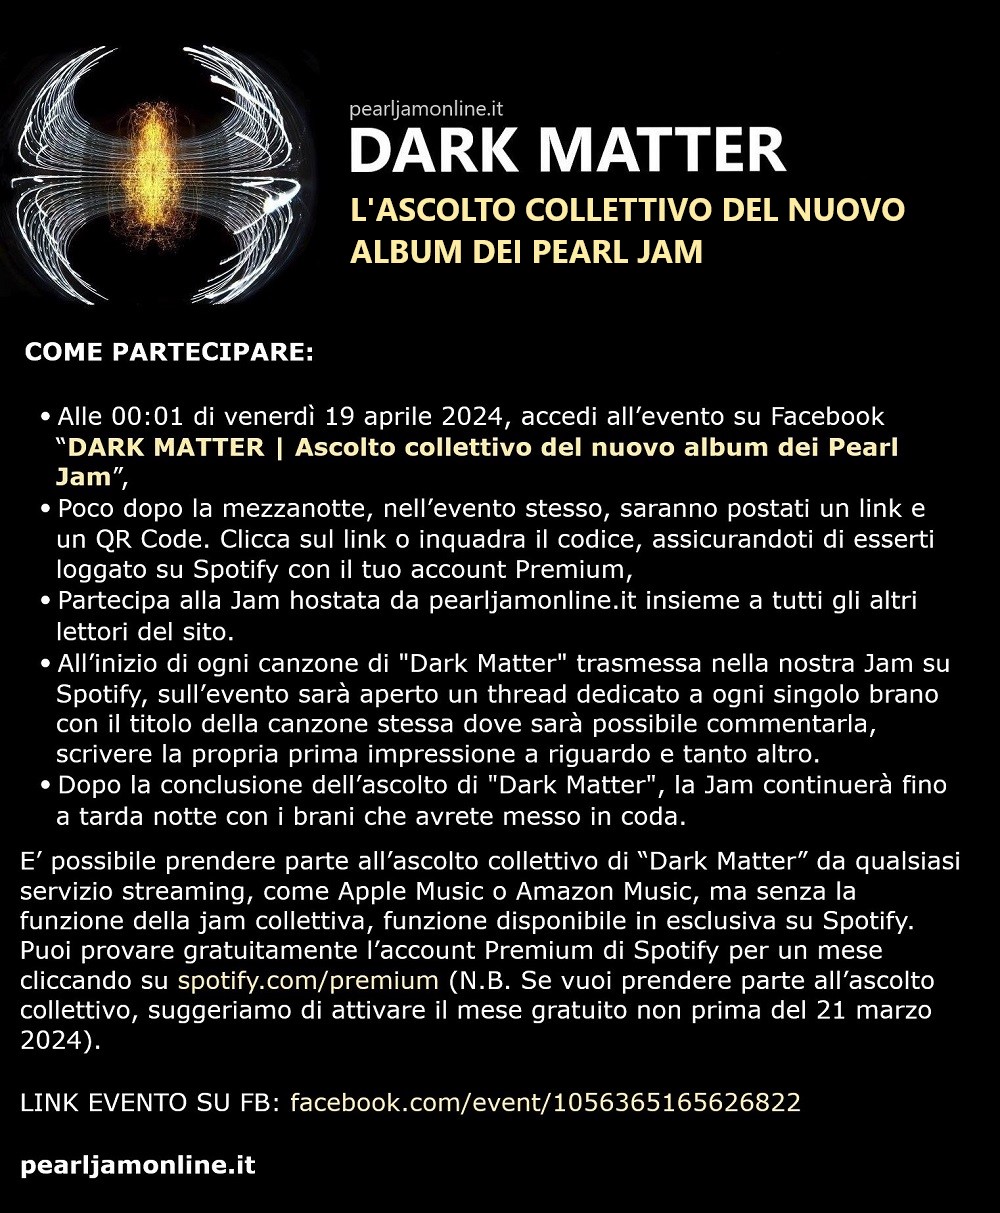 Dark Matter, l’ascolto collettivo del nuovo album dei Pearl Jam